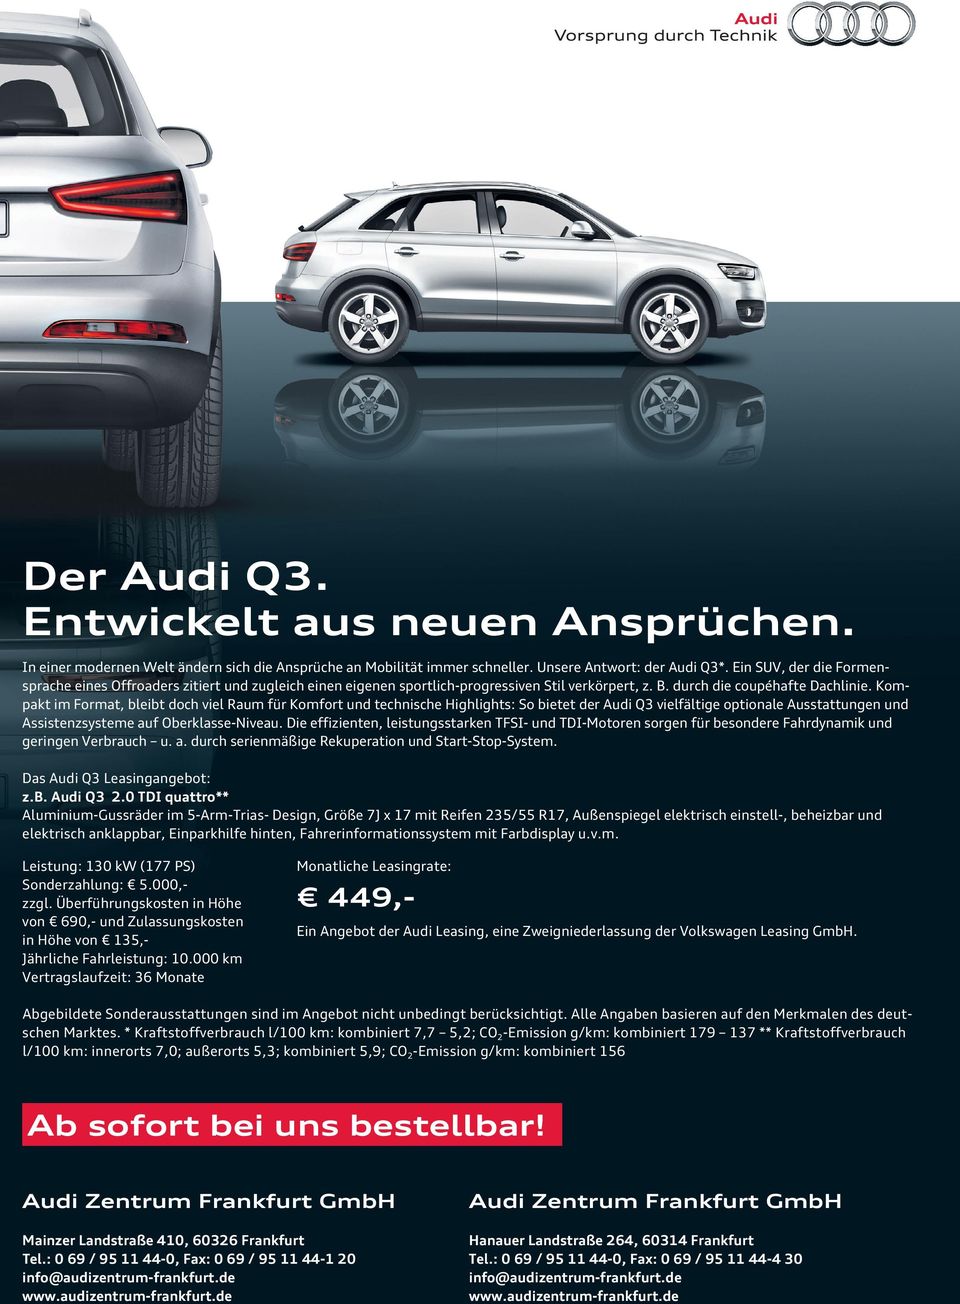 Kompakt im Format, bleibt doch viel Raum für Komfort und technische Highlights: So bietet der Audi Q3 vielfältige optionale Ausstattungen und Assistenzsysteme auf Oberklasse-Niveau.